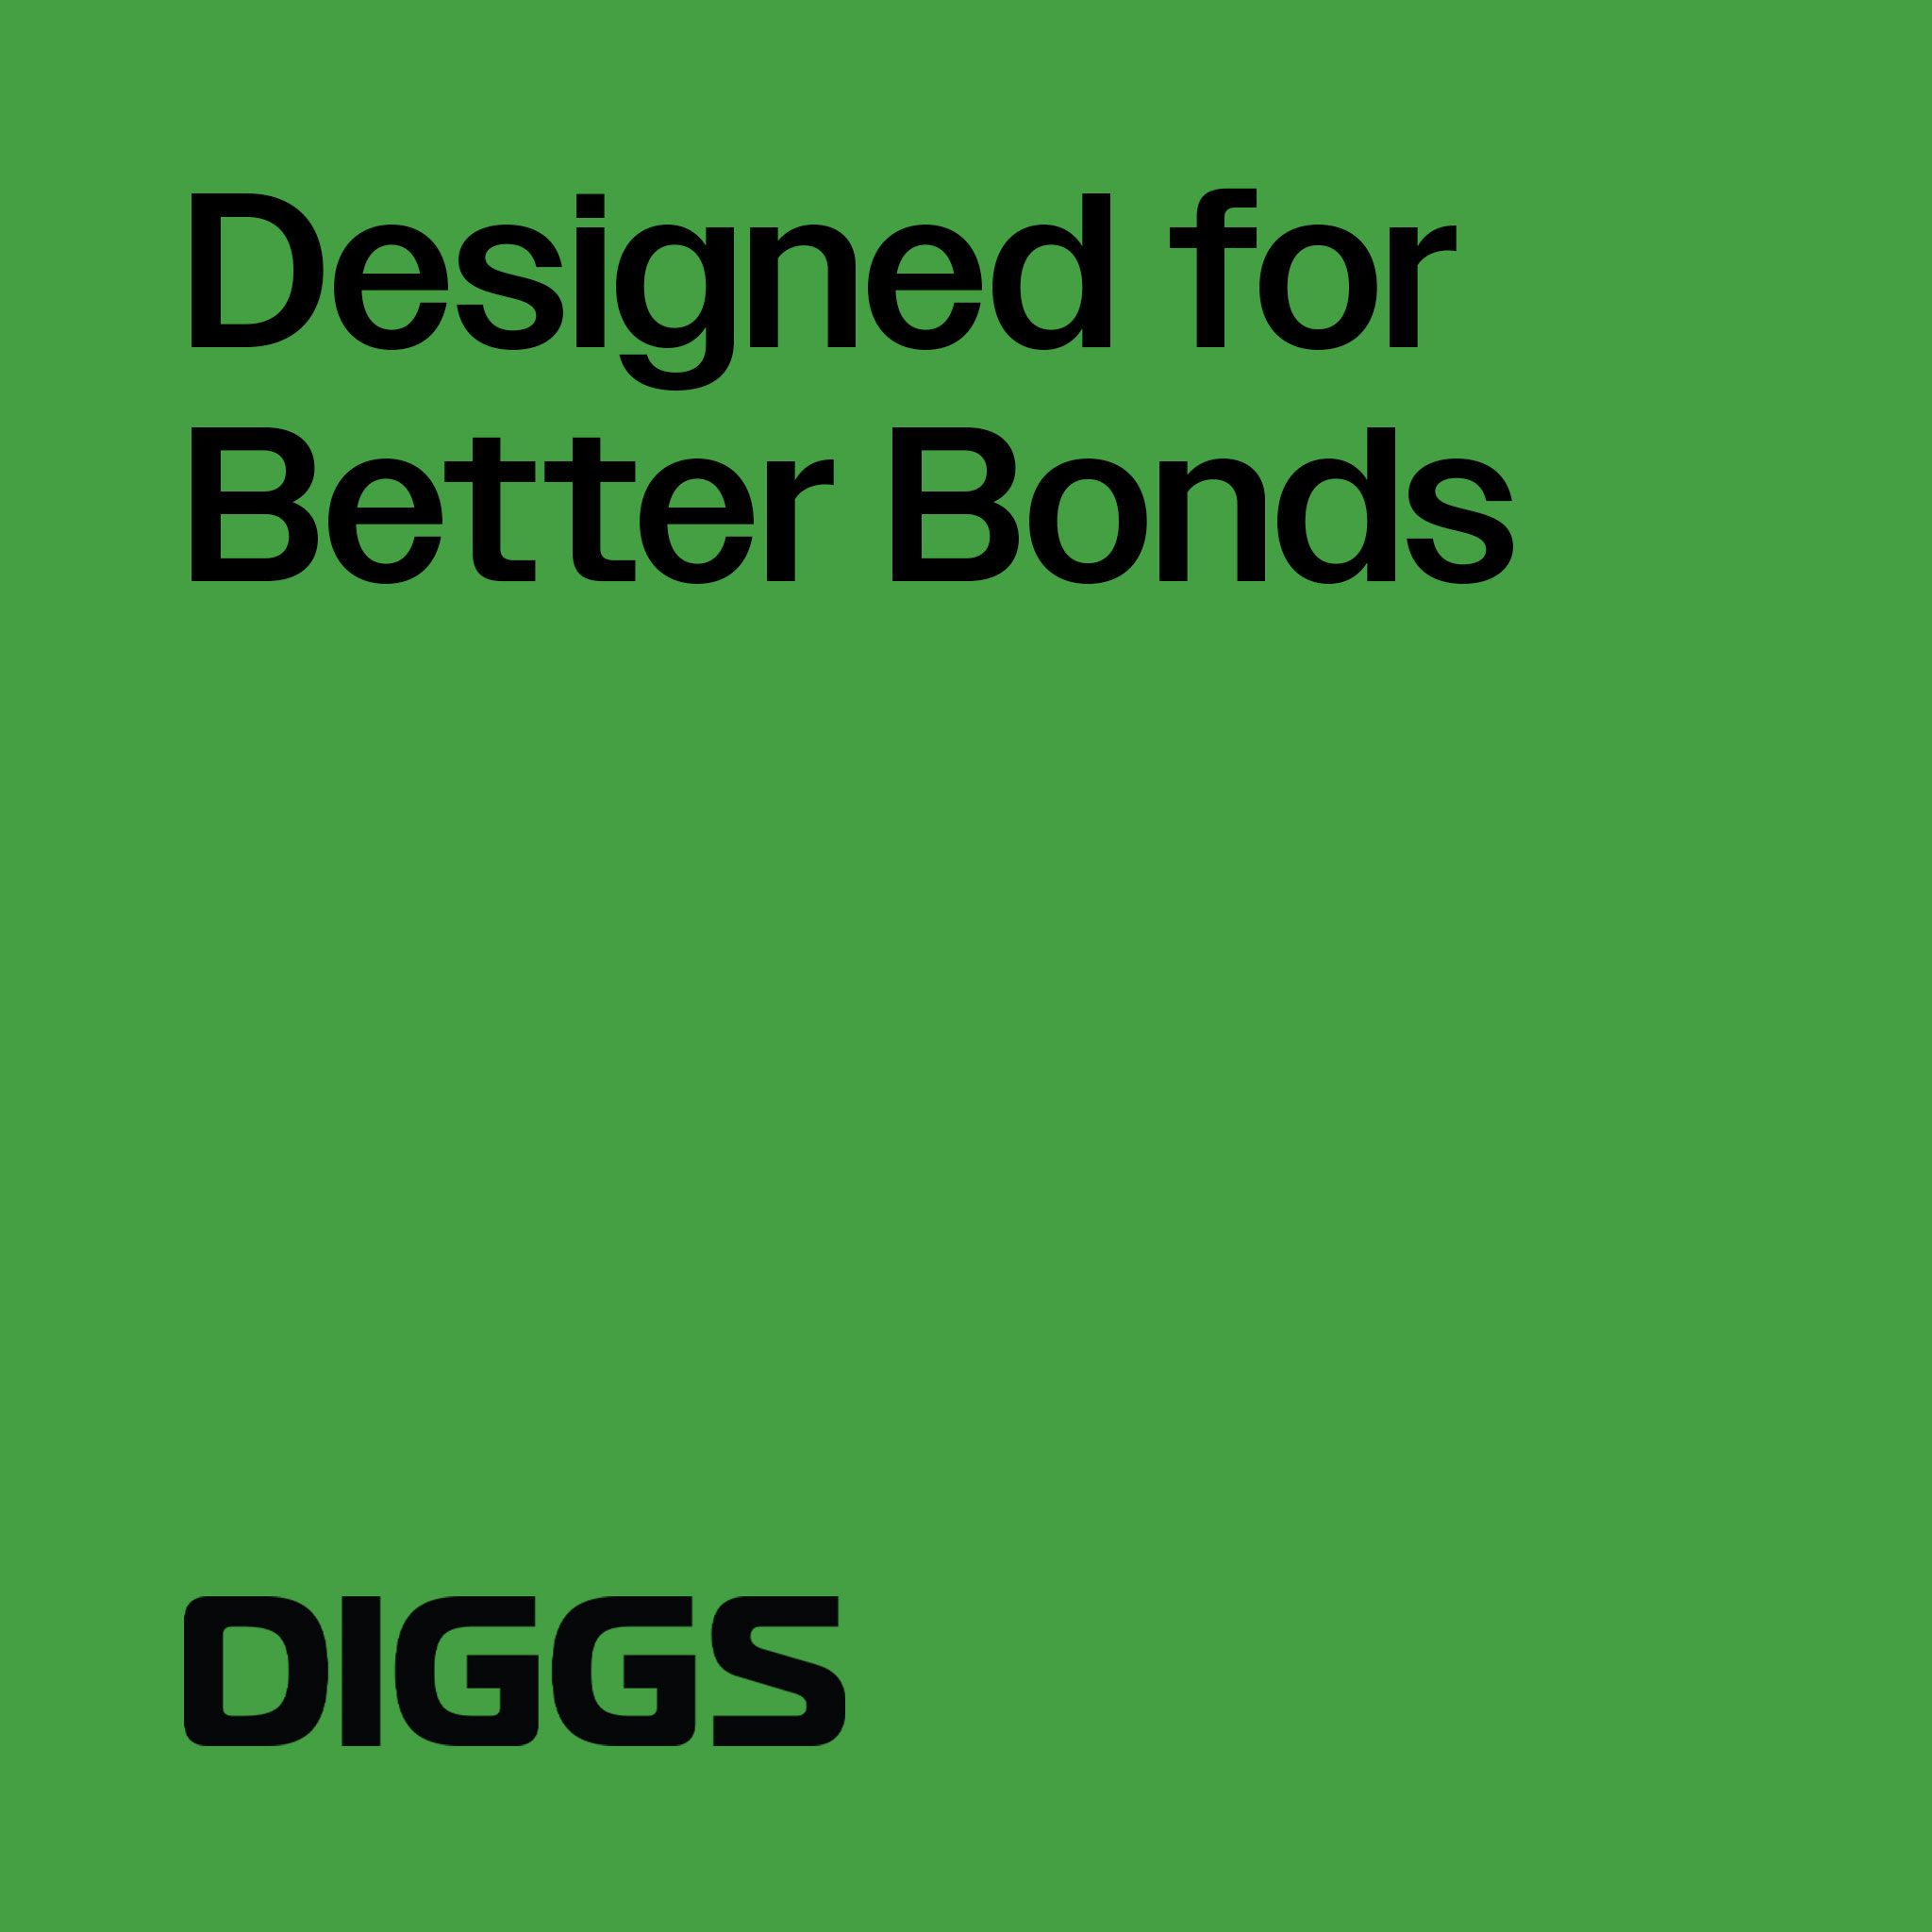 Diggs Rebrand Cover 2 